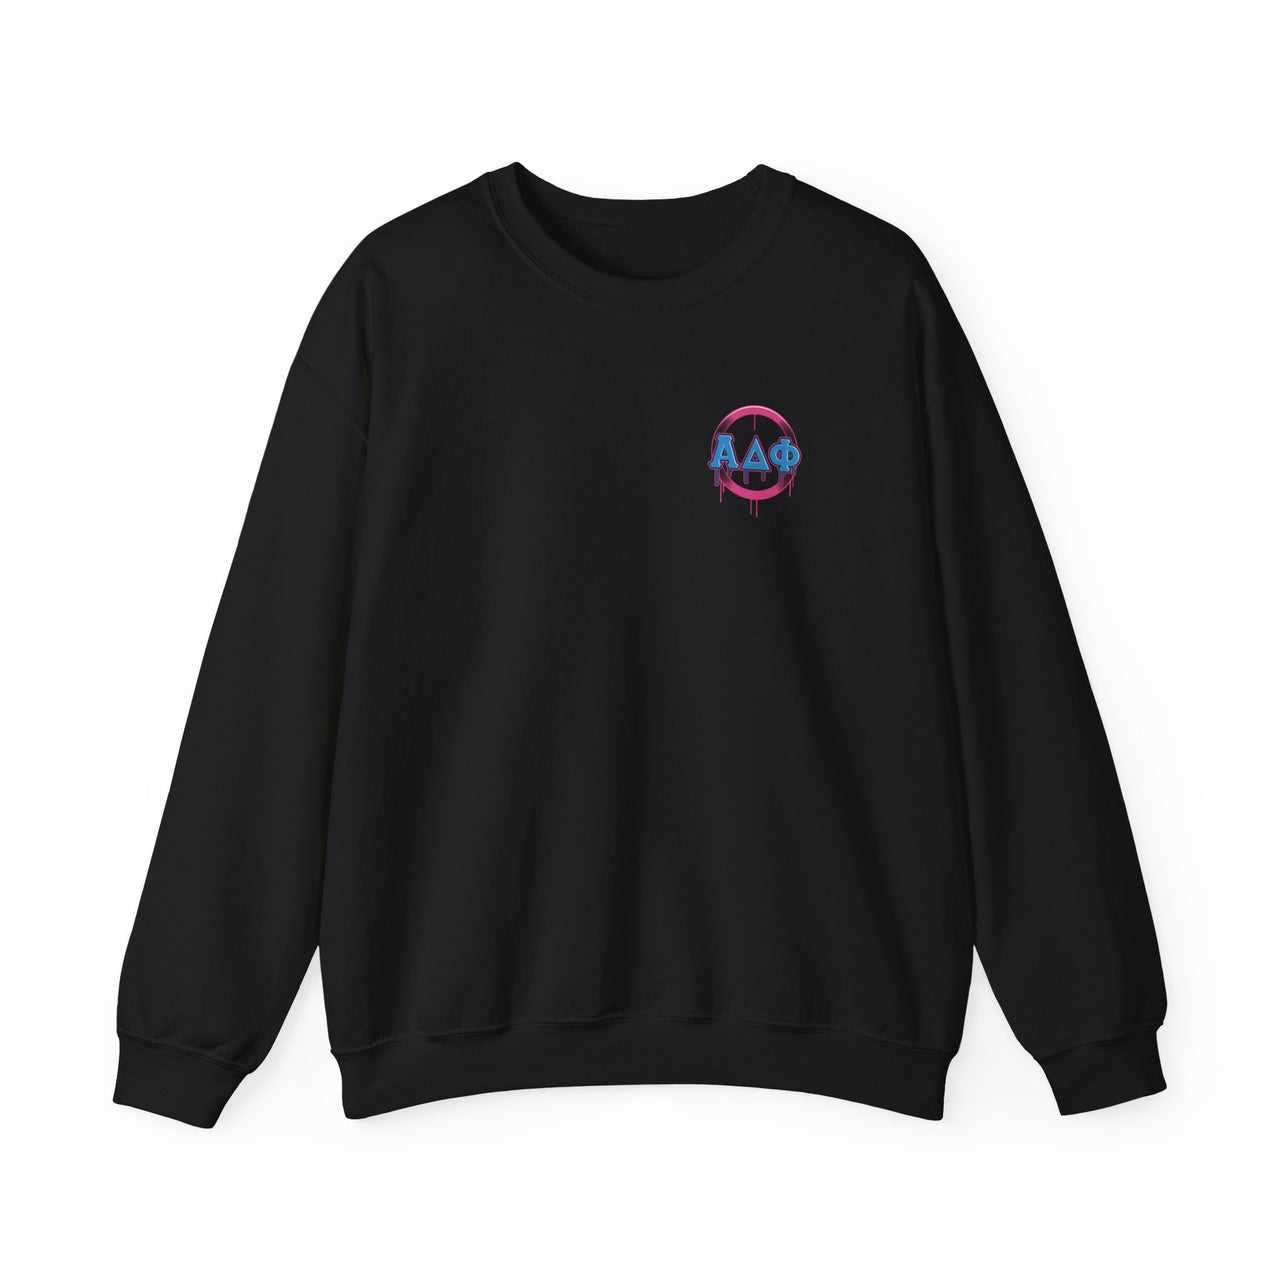 Alpha Delta Phi Graphic Crewneck Sweatshirt | Liberty Rebel